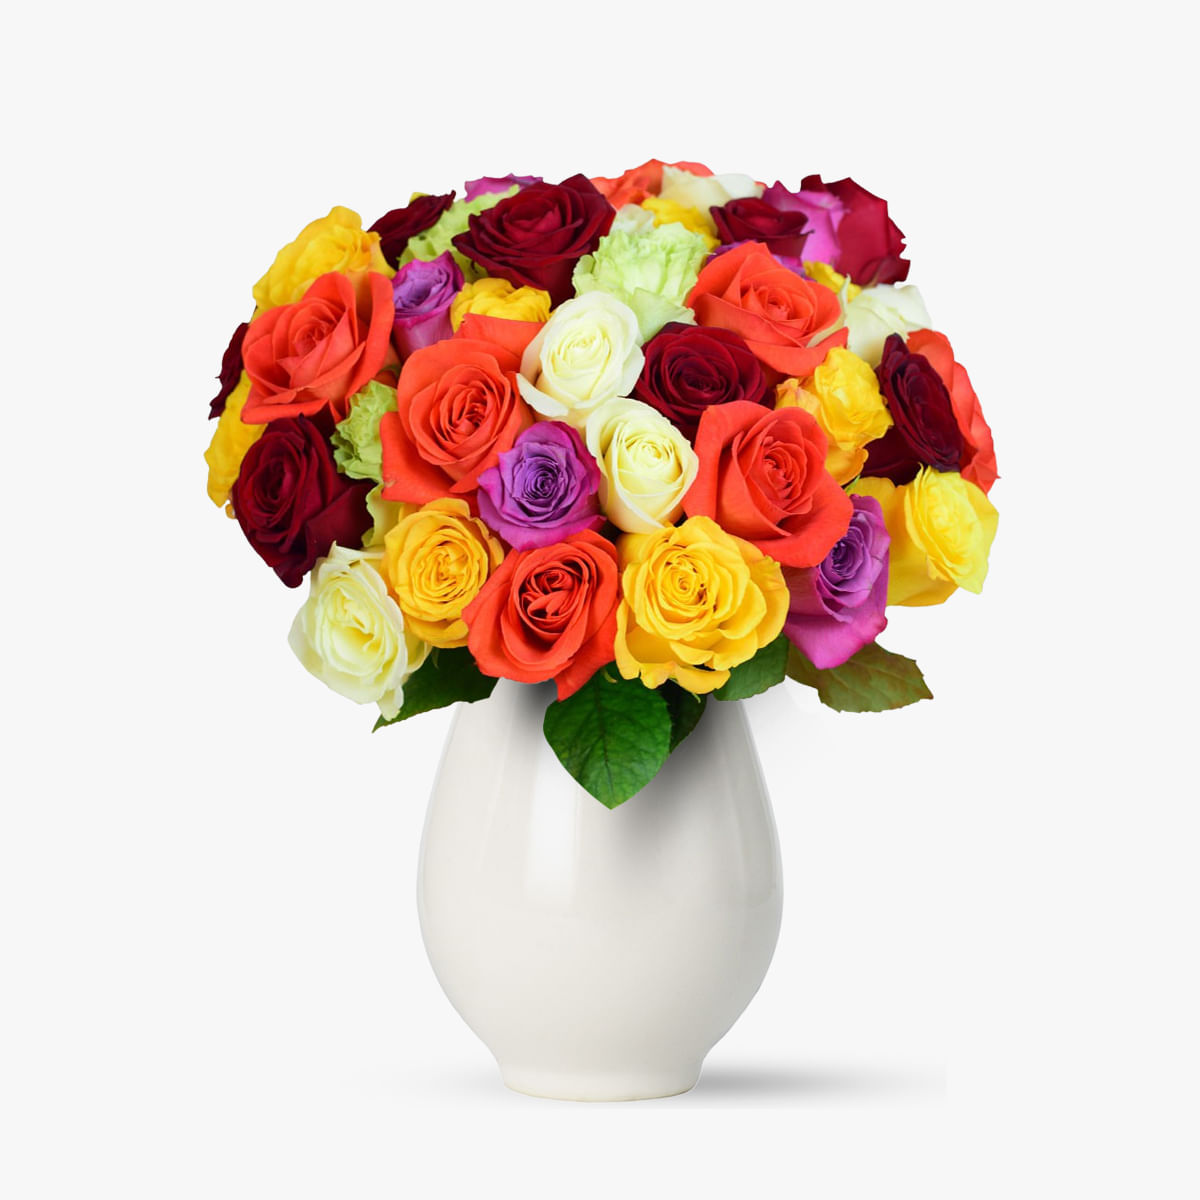 Buchet de 55 trandafiri multicolori – Standard Buchet imagine 2022